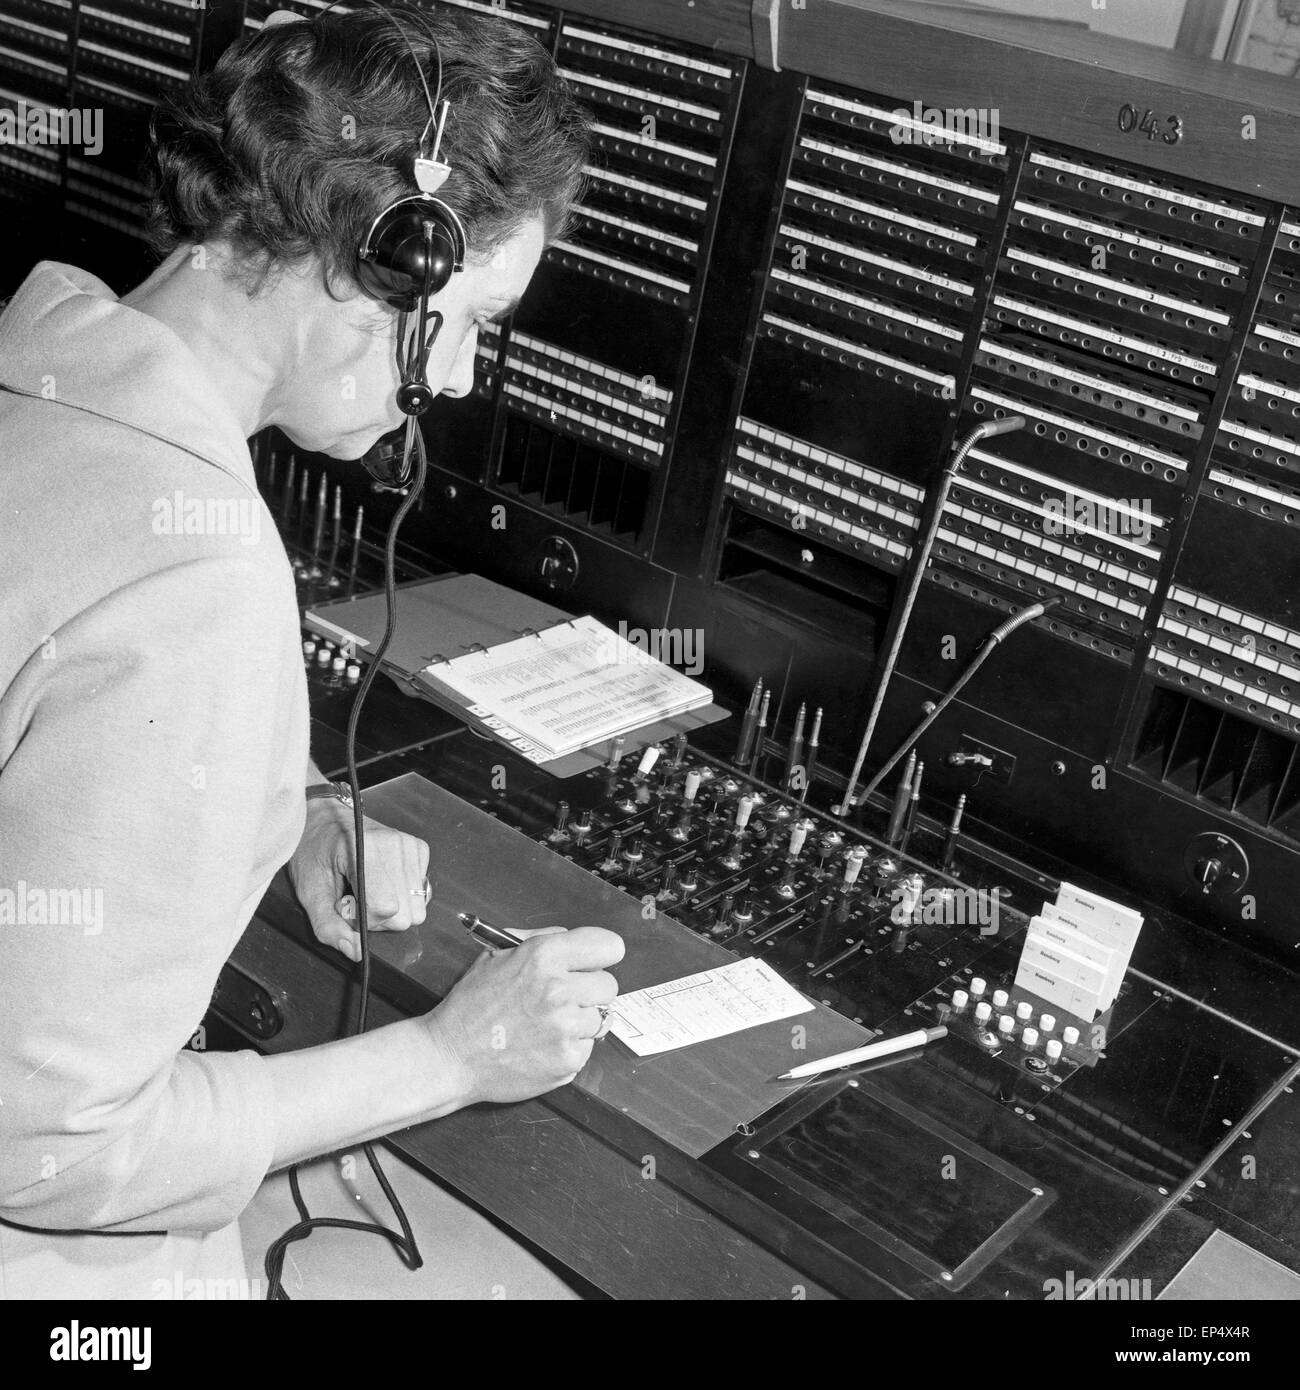 Bildreportage über den Arbeitsalltag Deutschern Bundespost, Deutschland 1960er Jahre. Photo coverage about every day work at Stock Photo